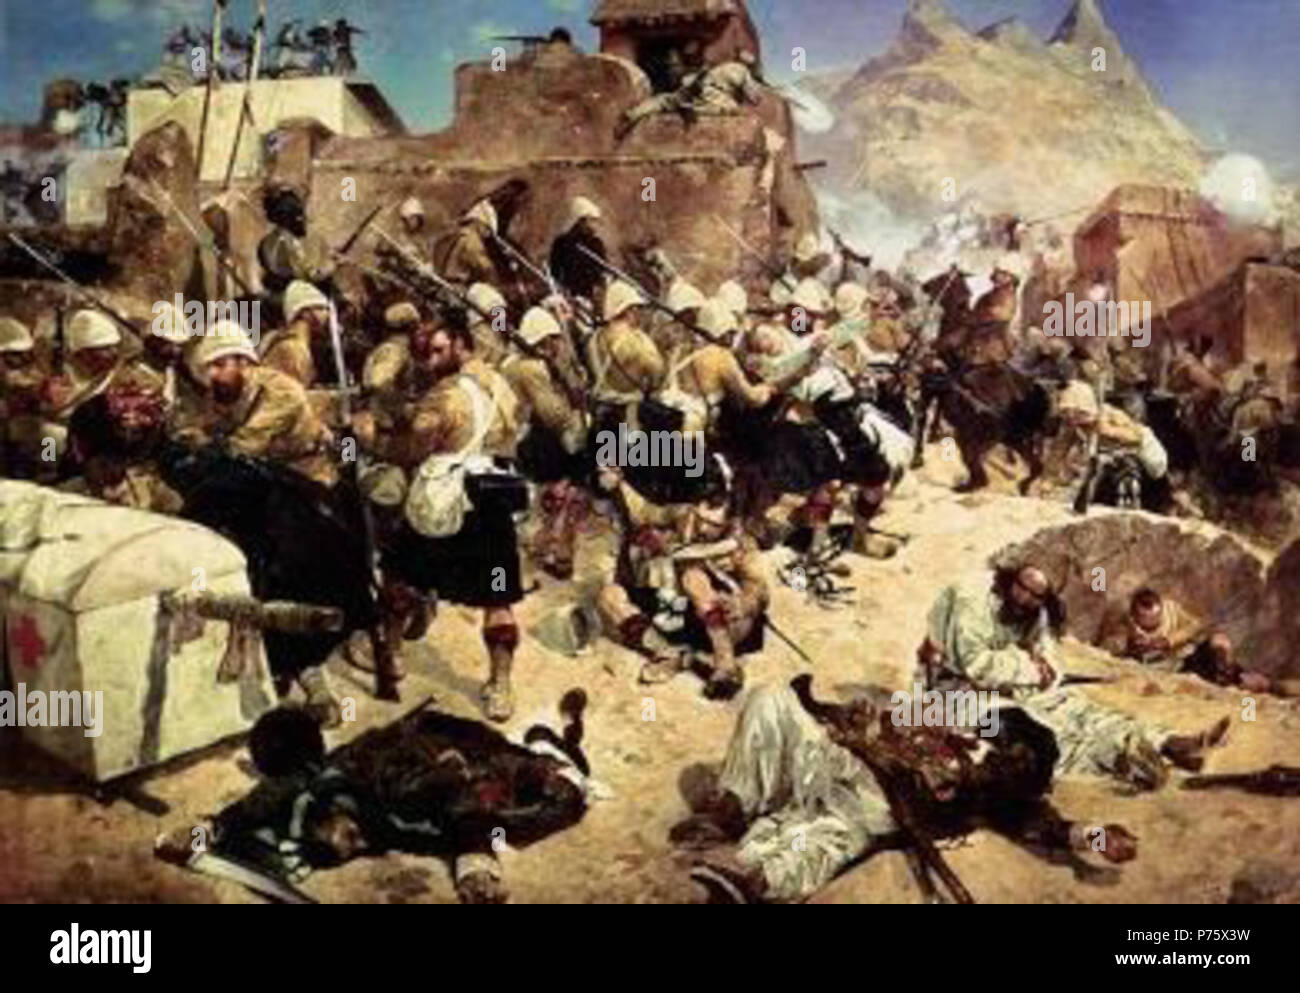 Englisch: zweite Anglo-Afghan Krieg Polski: Druga wojna anglo-afgaska. Aus dem späten 19. Jahrhundert, 150 Kandahar 92nd Highlanders Stockfoto